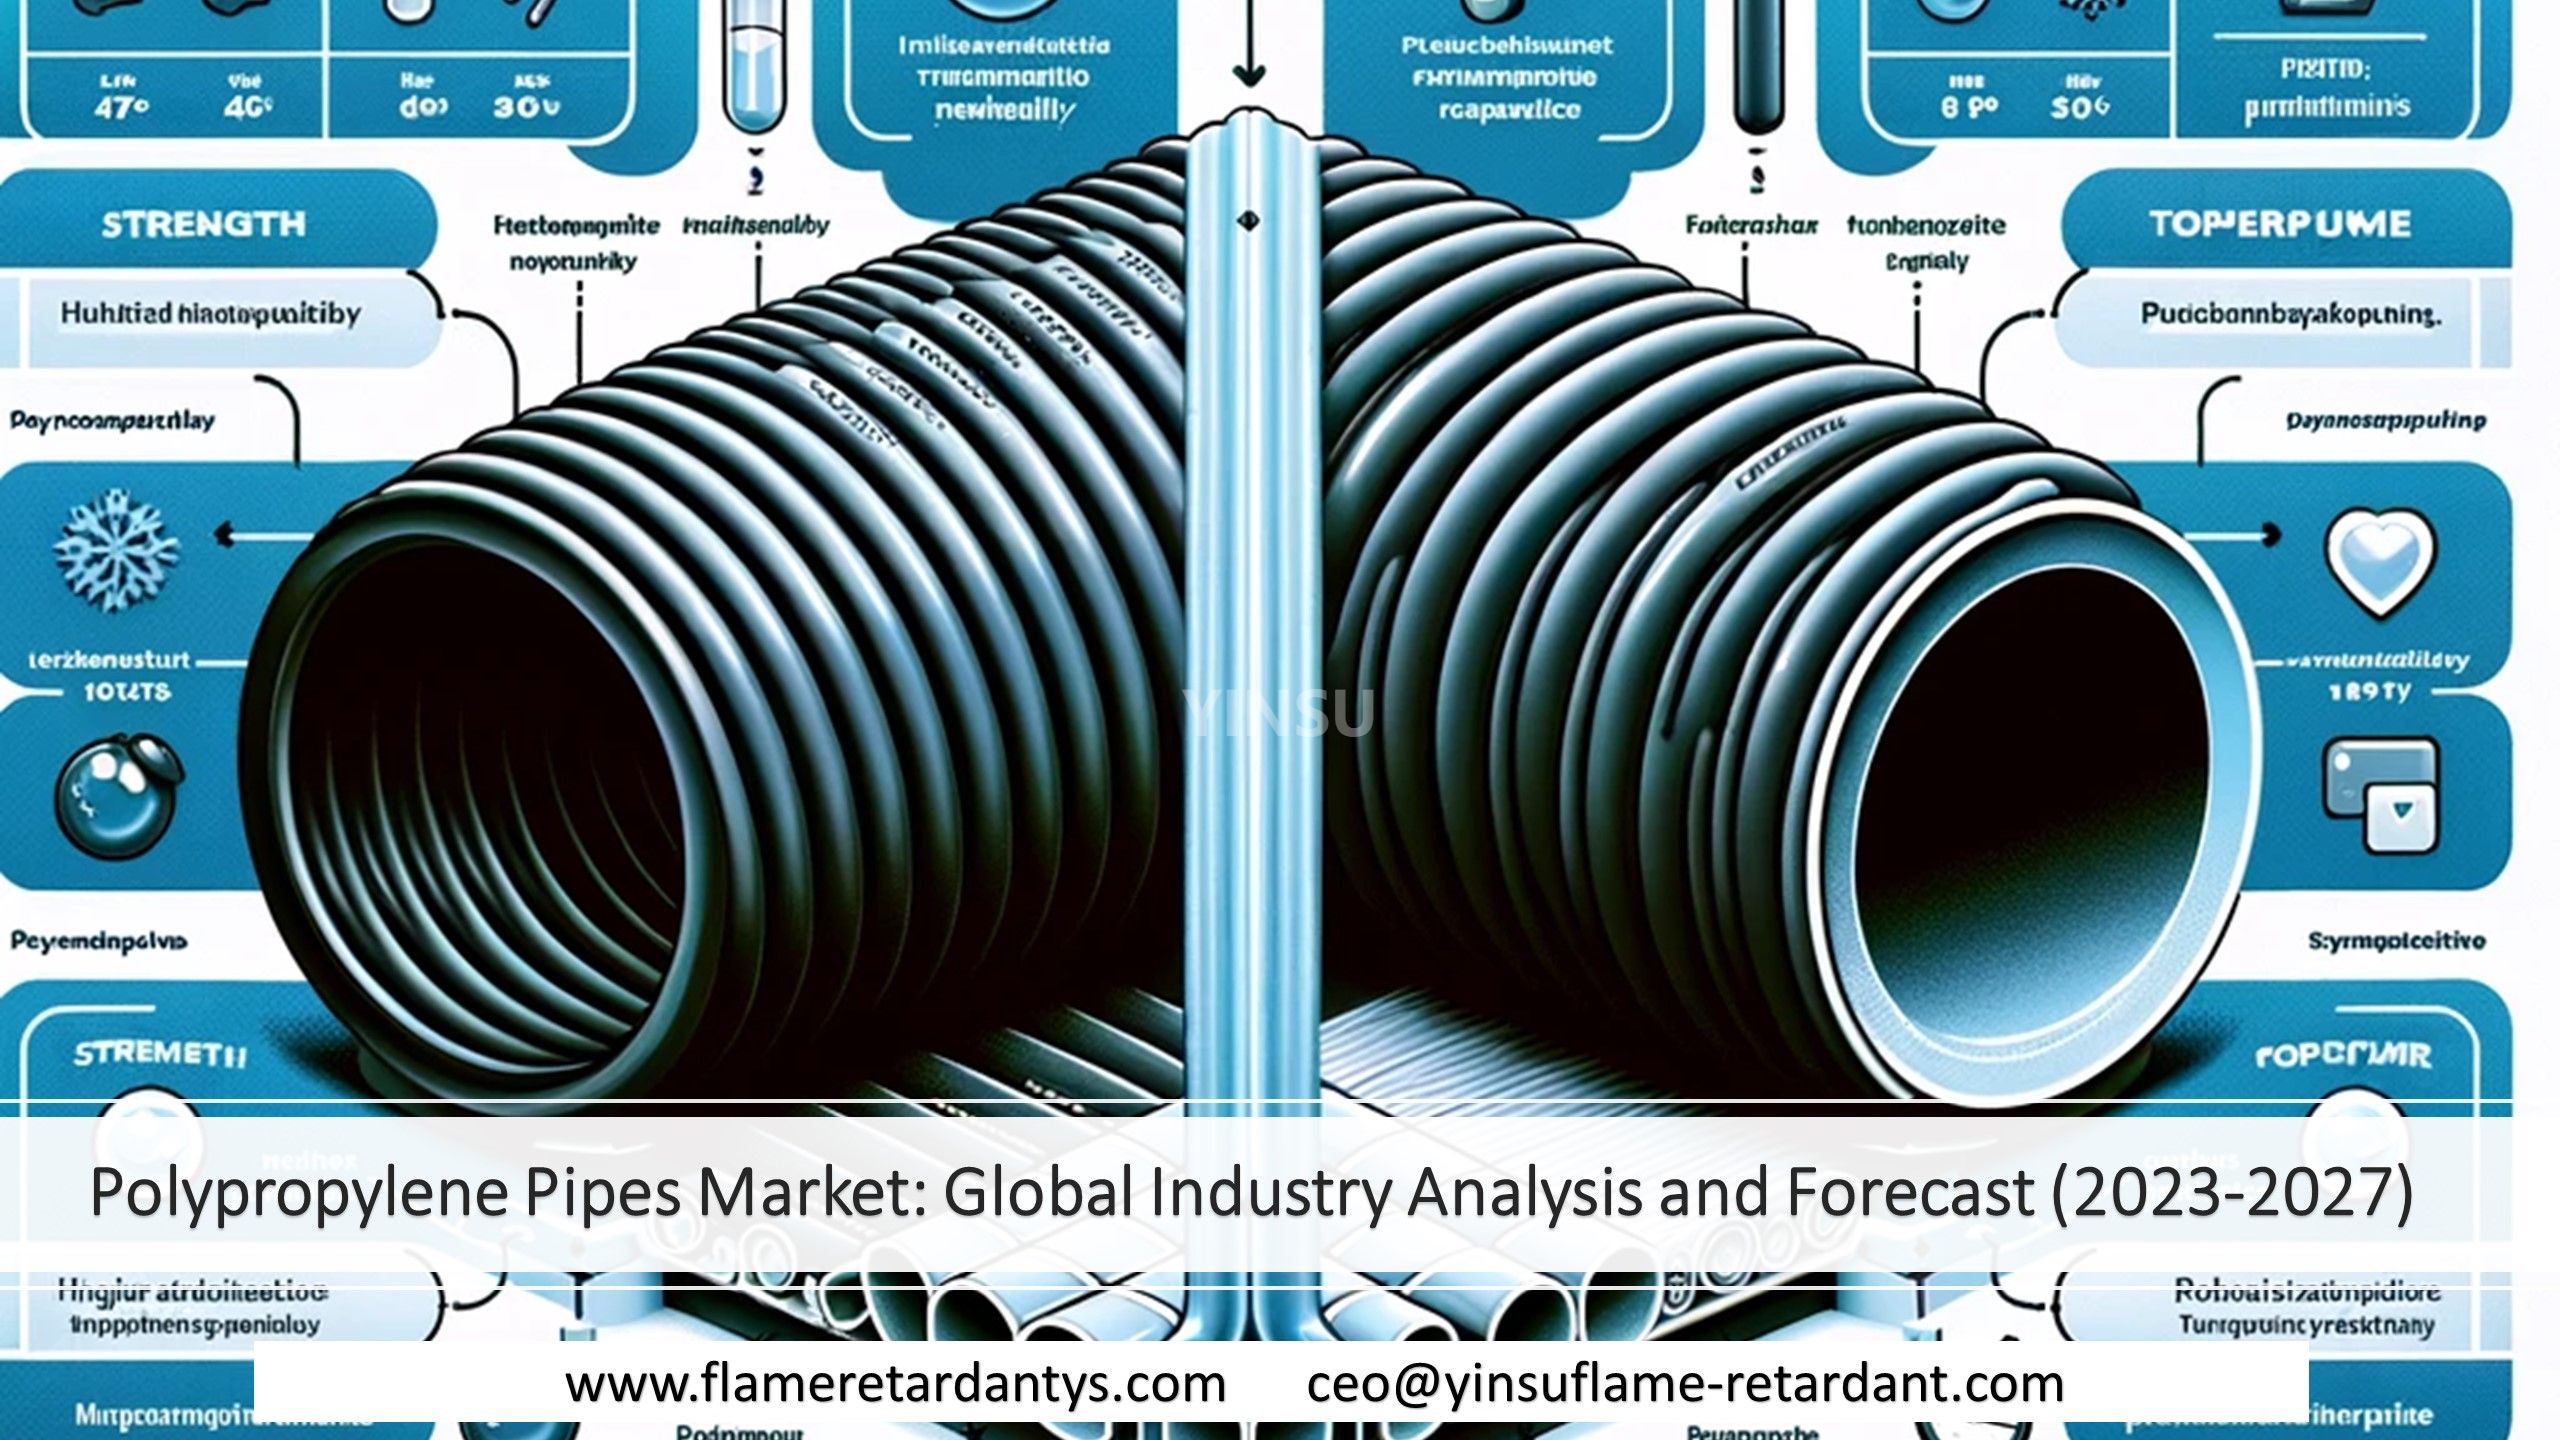 Marché des tuyaux en polypropylène : analyse et prévisions de l’industrie mondiale (2023-2027)